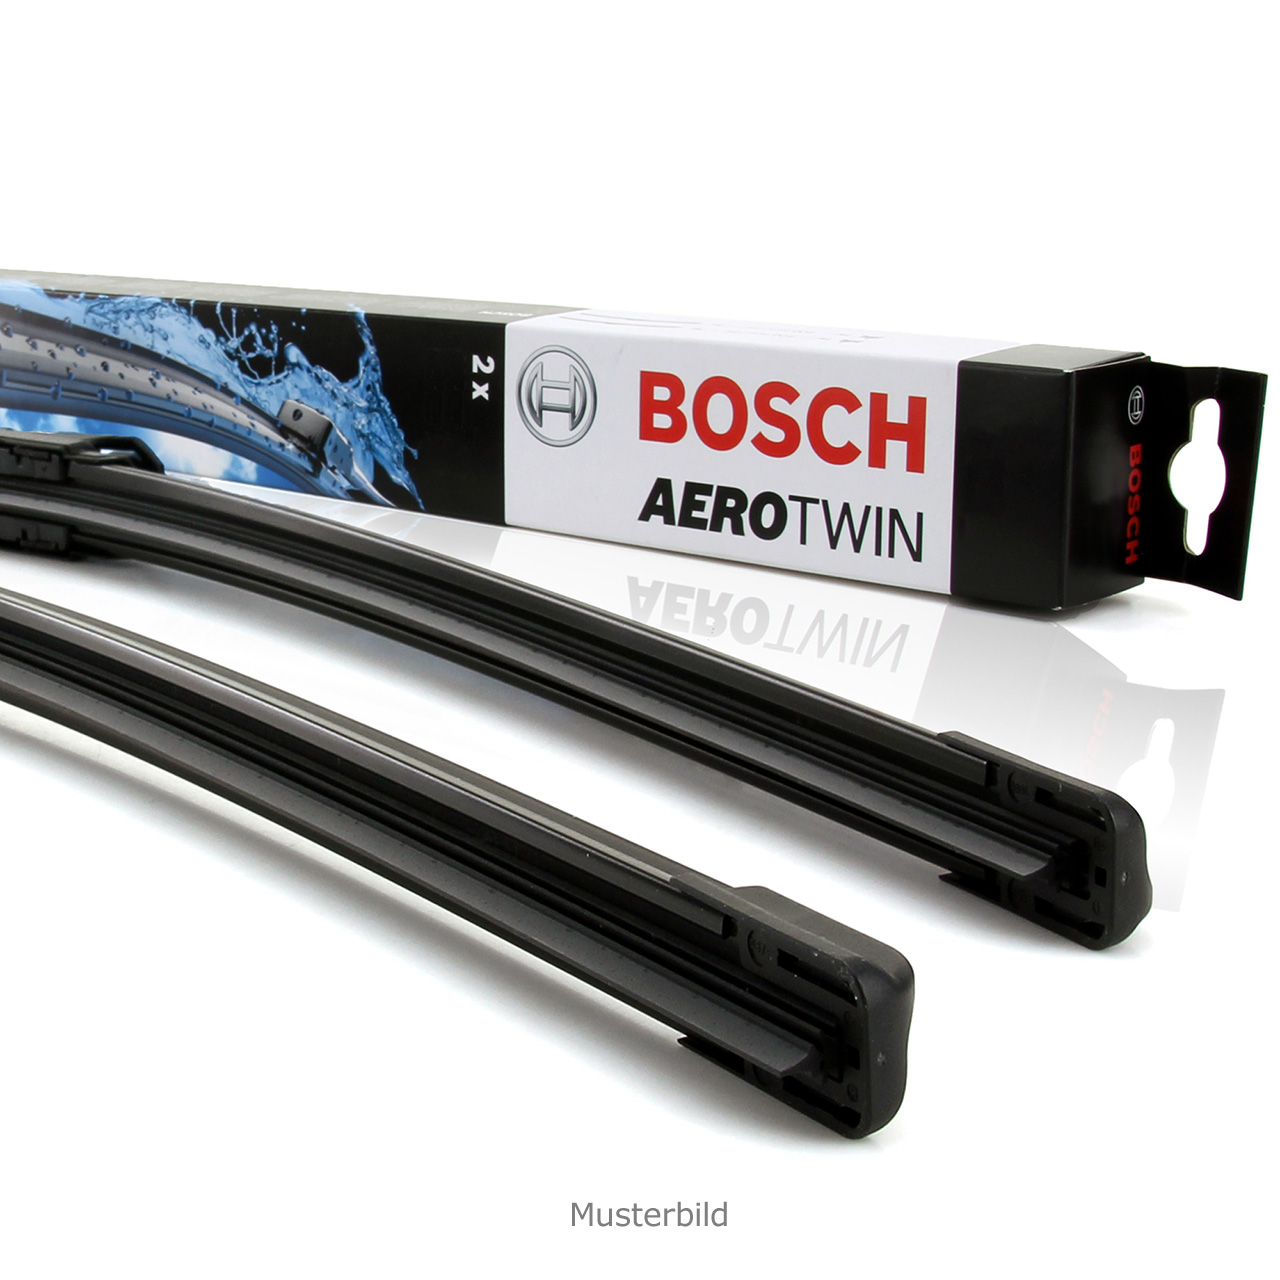 Bosch aerotwin a933s - Die besten Bosch aerotwin a933s ausführlich analysiert!